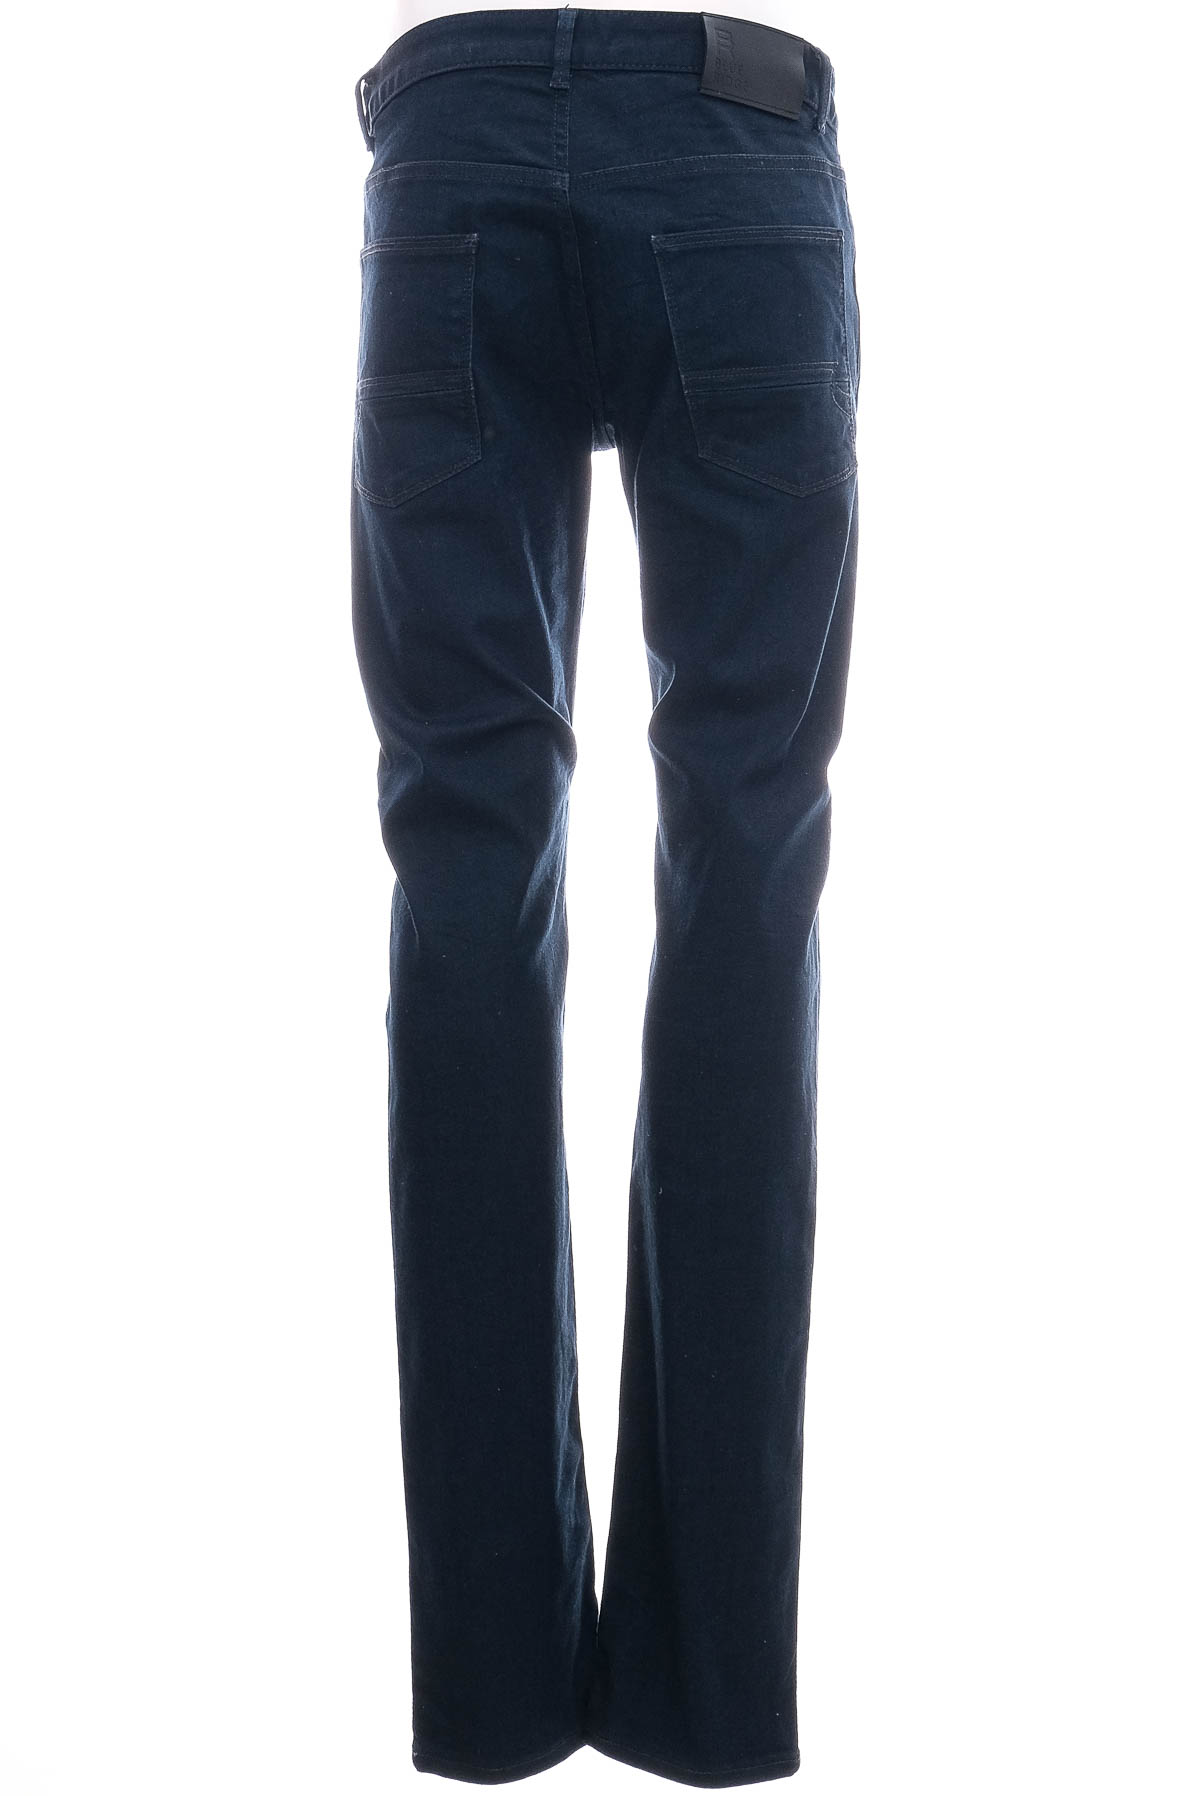 Jeans pentru bărbăți - Blue Ridge - 1